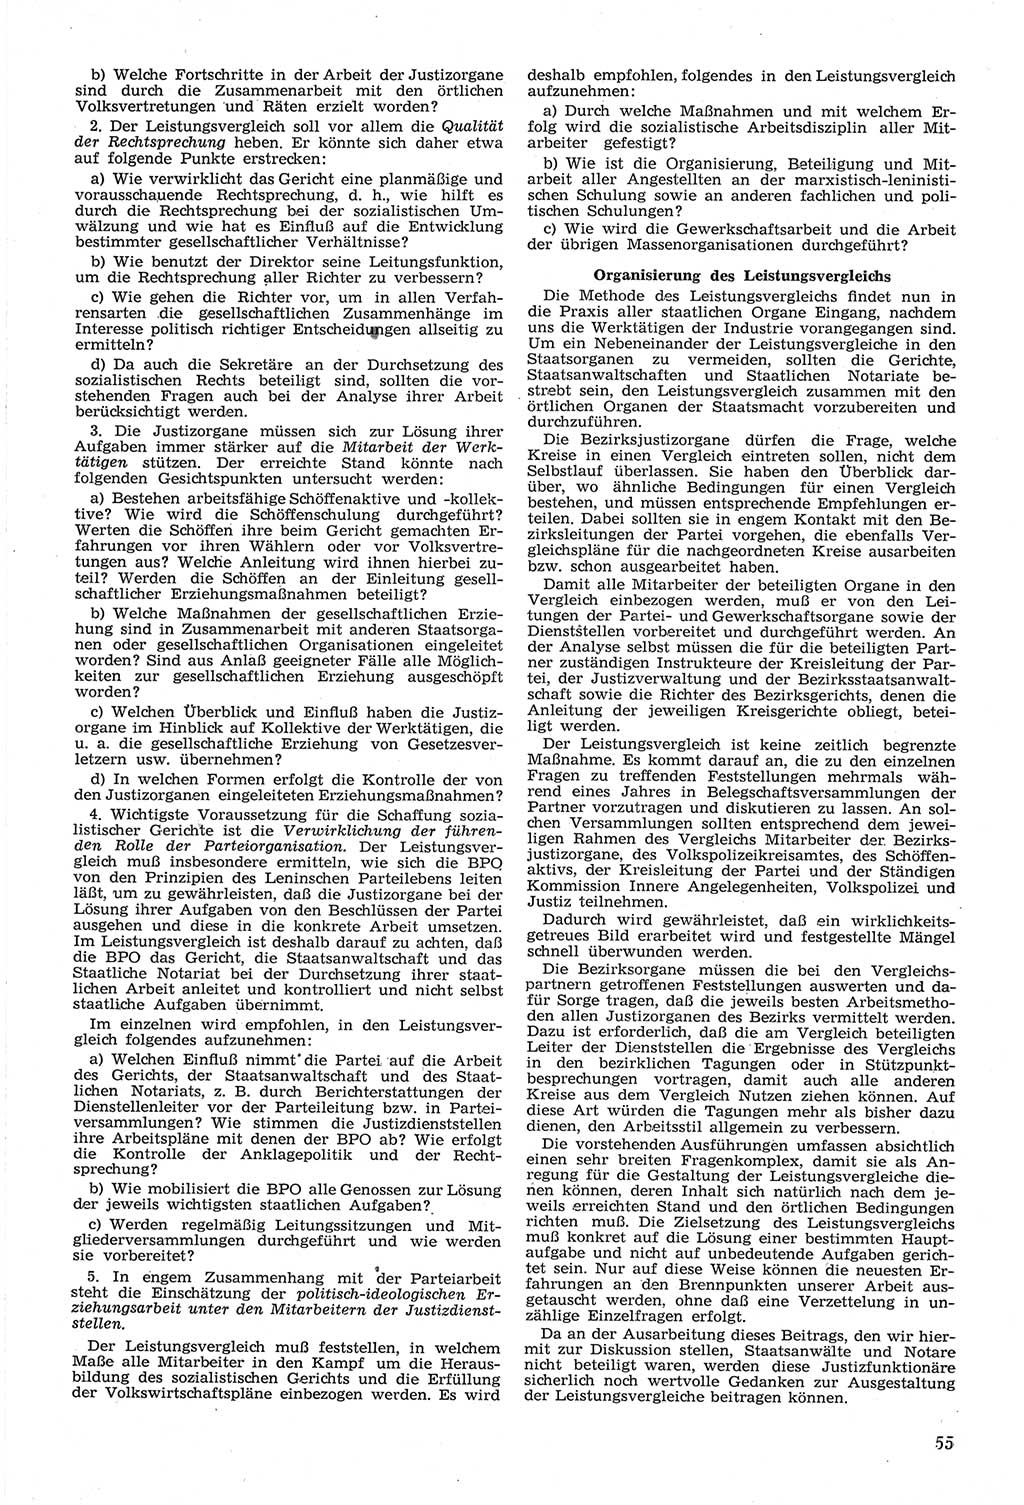 Neue Justiz (NJ), Zeitschrift für Recht und Rechtswissenschaft [Deutsche Demokratische Republik (DDR)], 14. Jahrgang 1960, Seite 55 (NJ DDR 1960, S. 55)